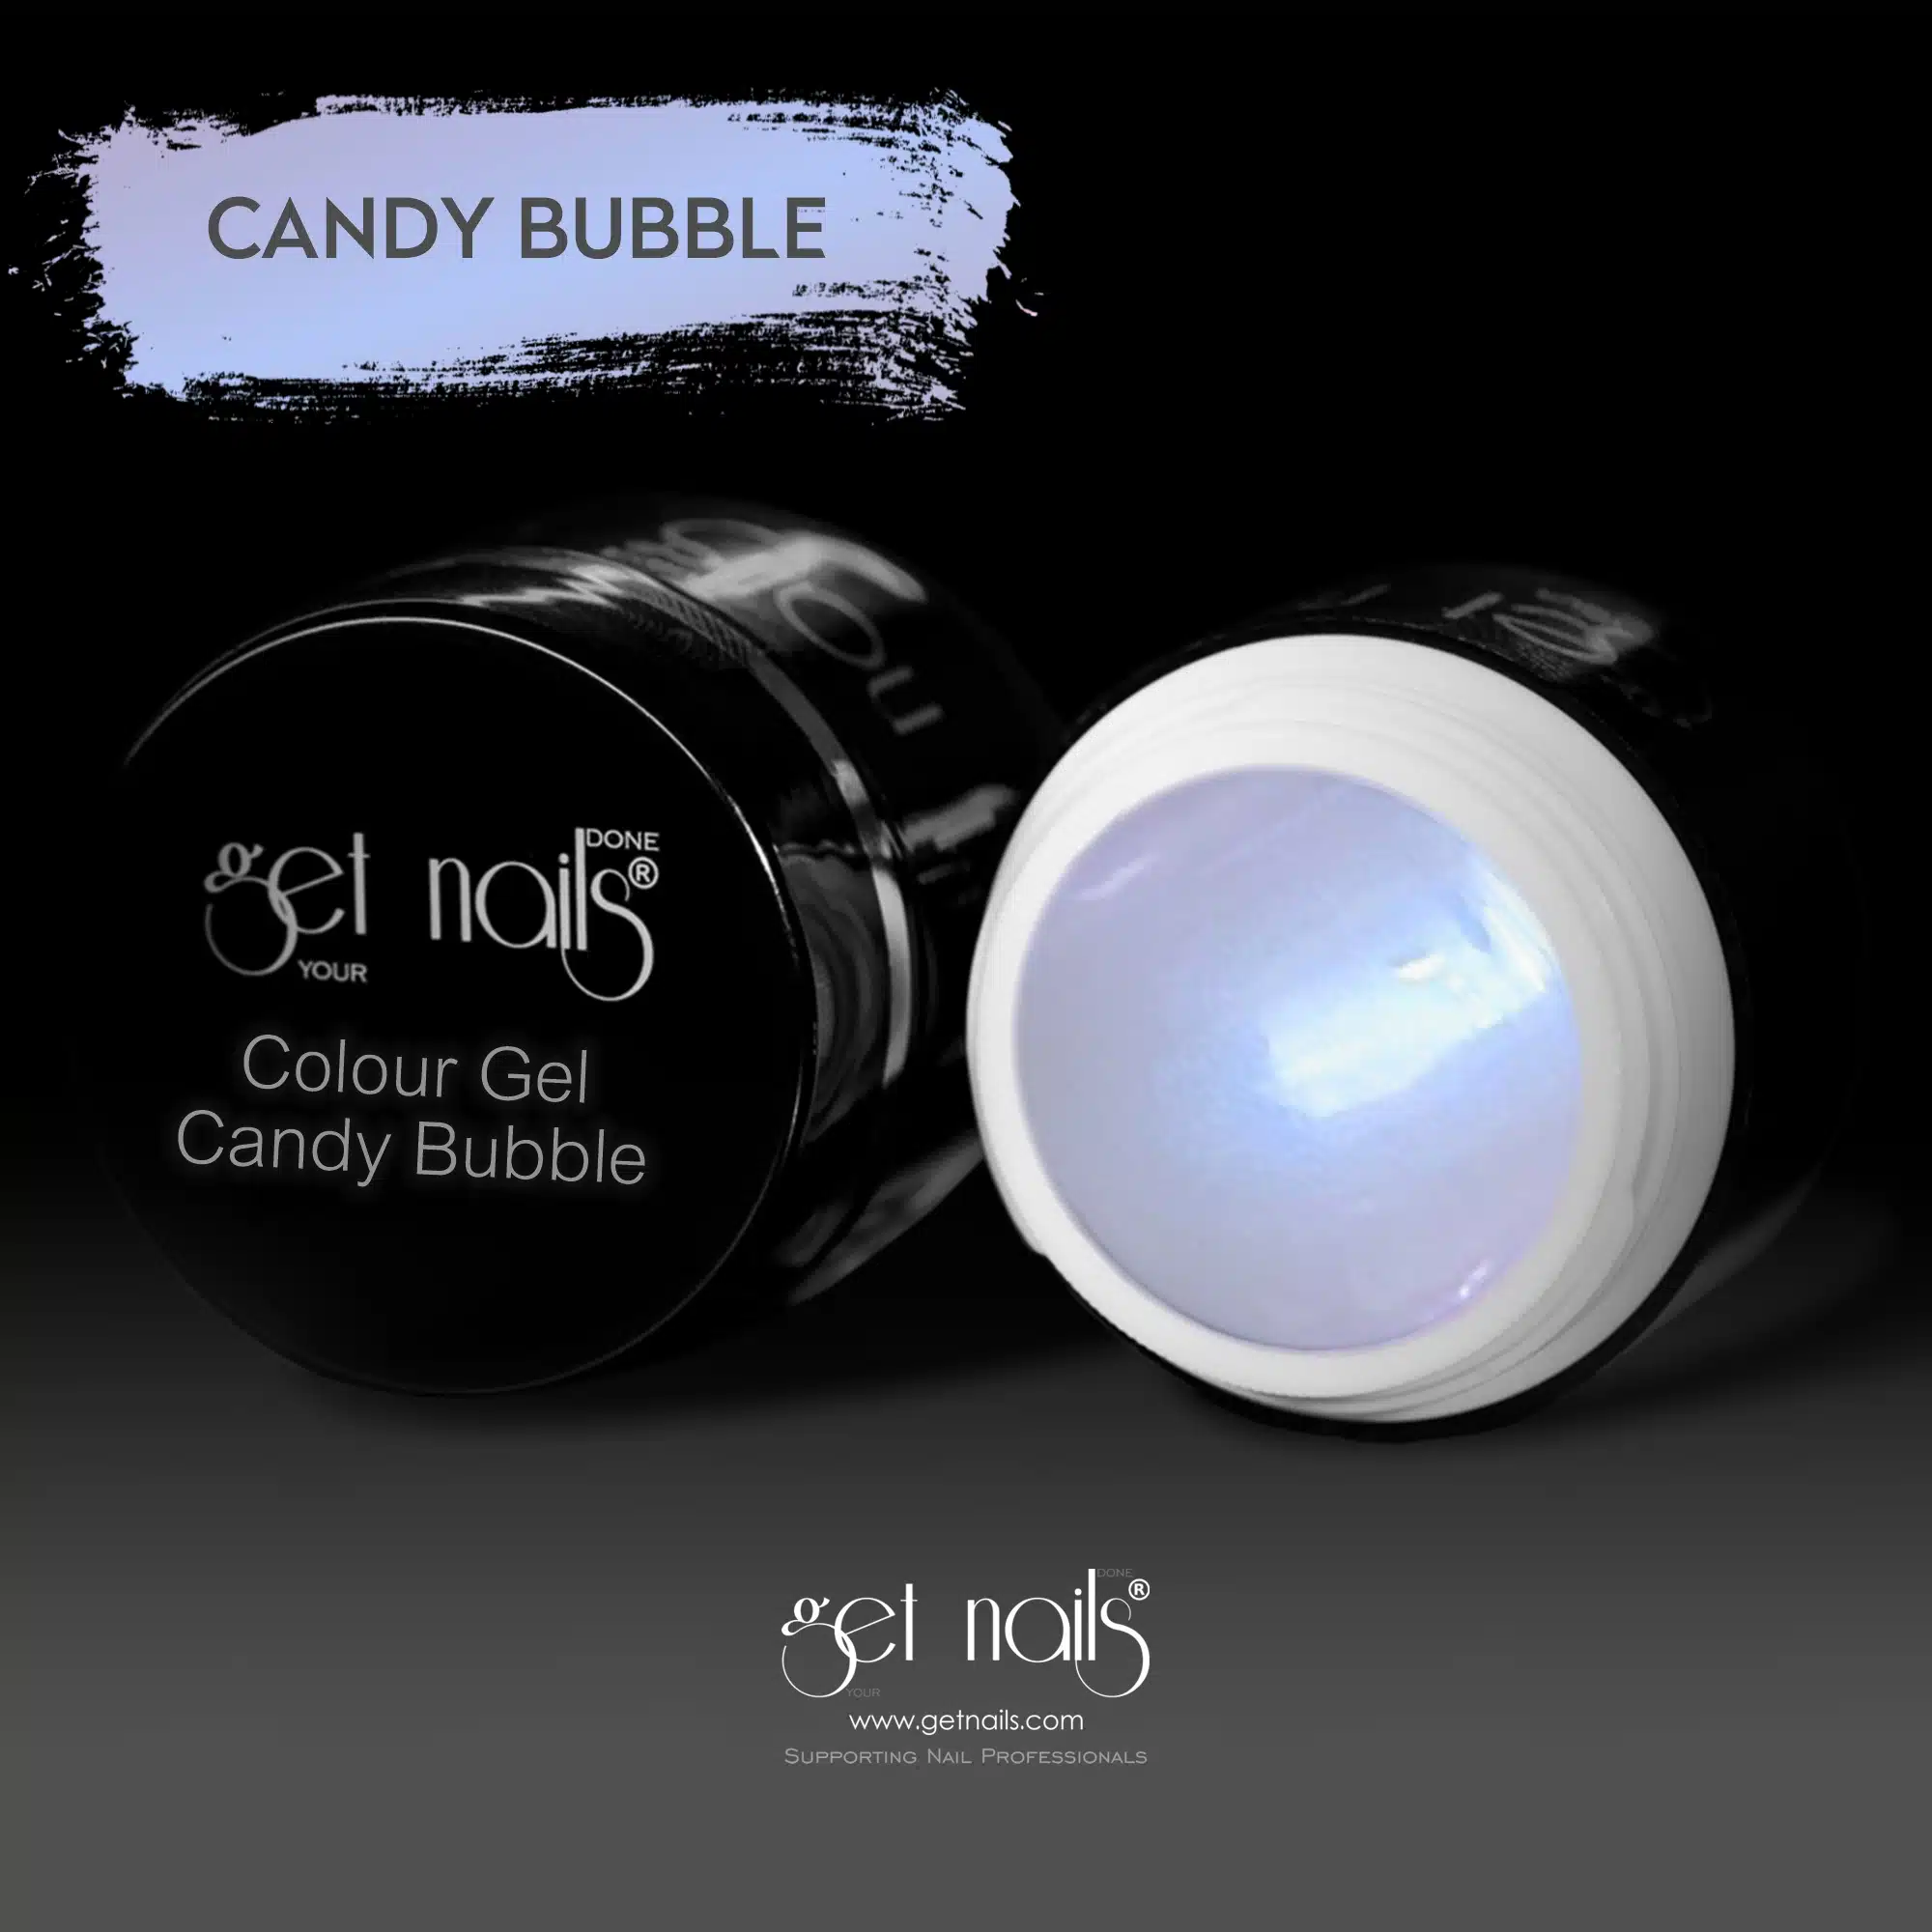 Get Nails Austria - Colour Gel Candy Bubble 5g